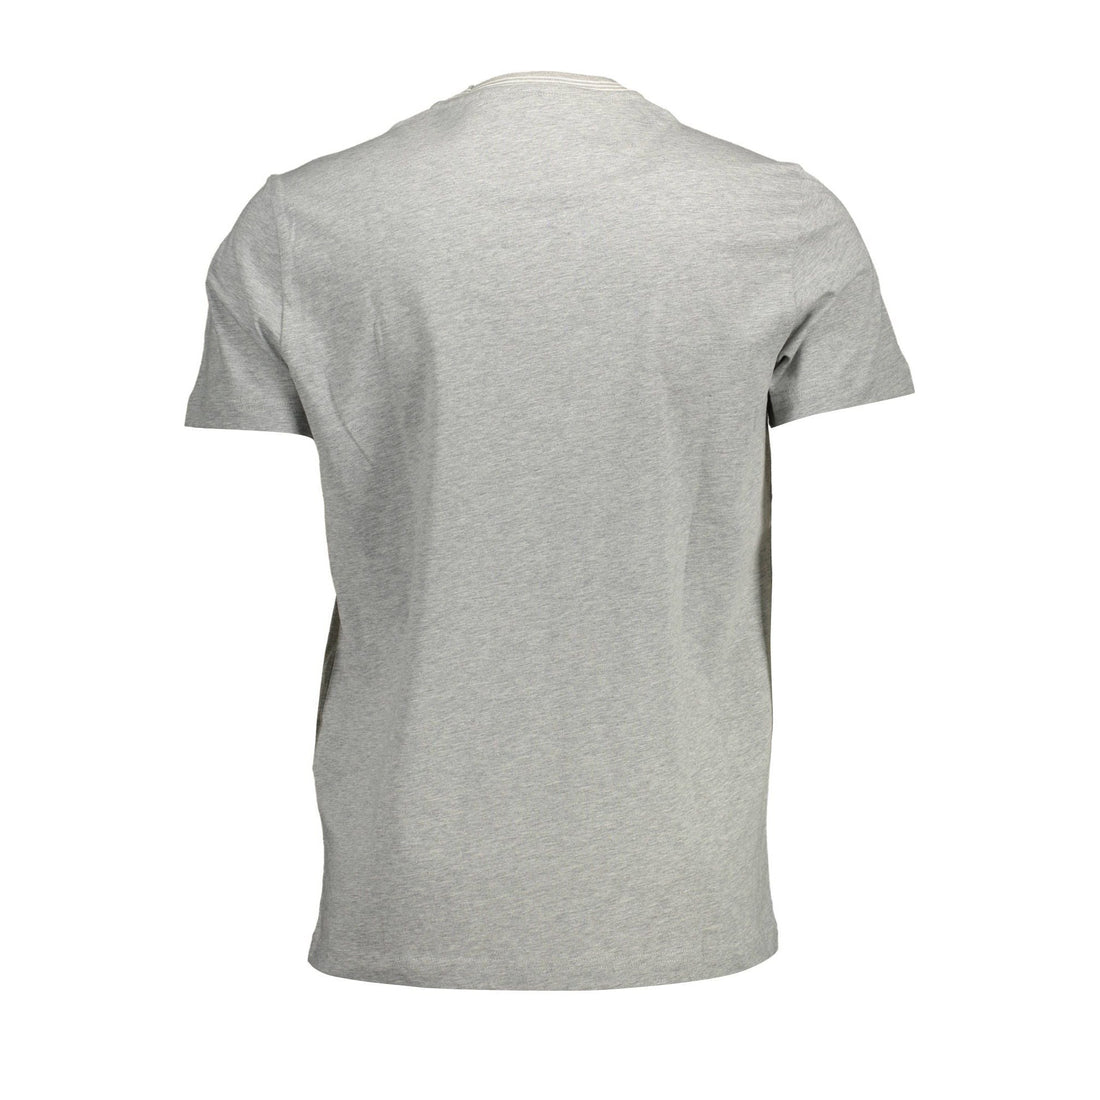 Harmont & Blaine Elegant Gray Cotton T-Shirt with Contrast Details